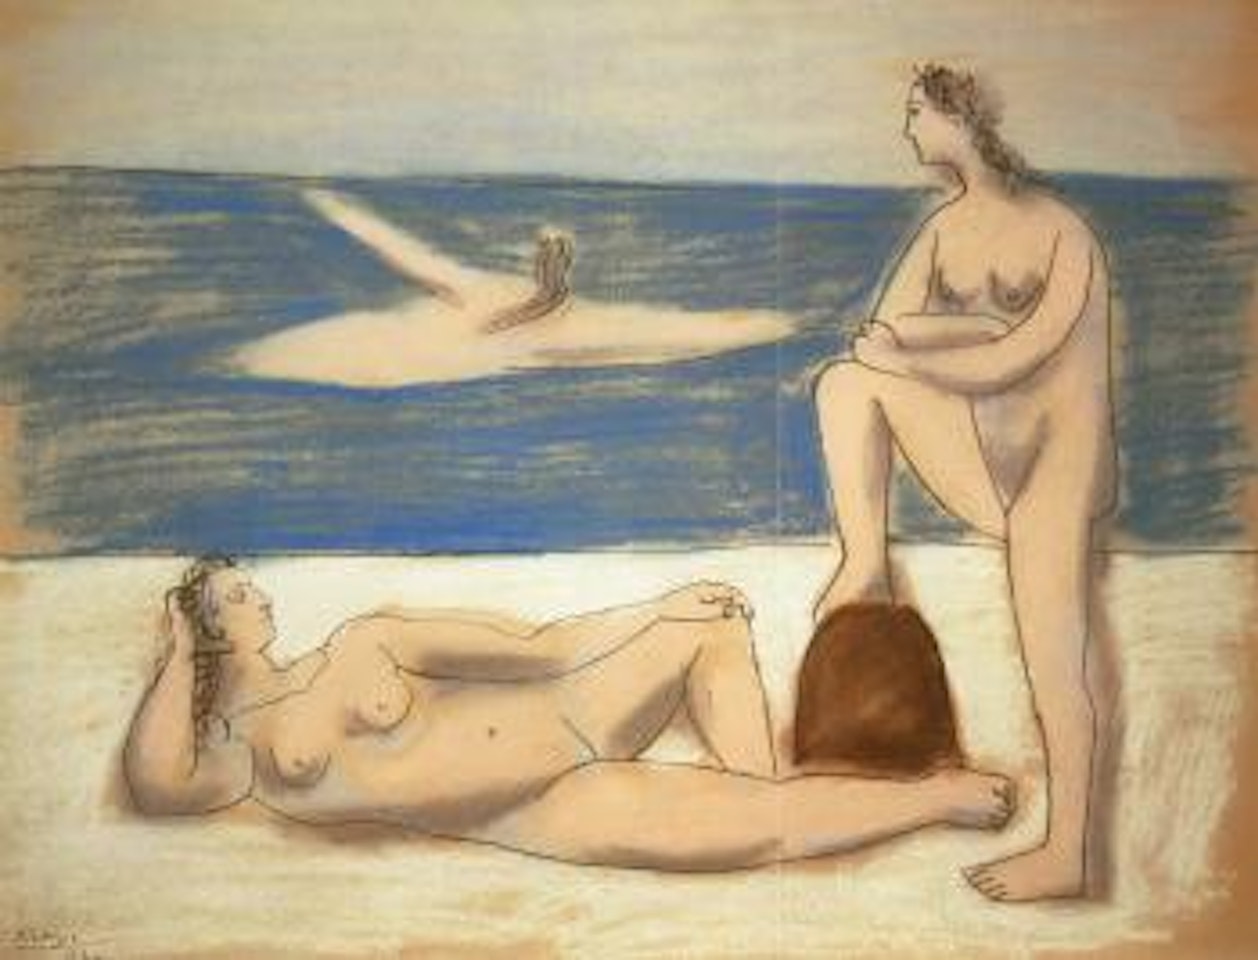 Trois baigneuses, Juan-les-Pins by Pablo Picasso